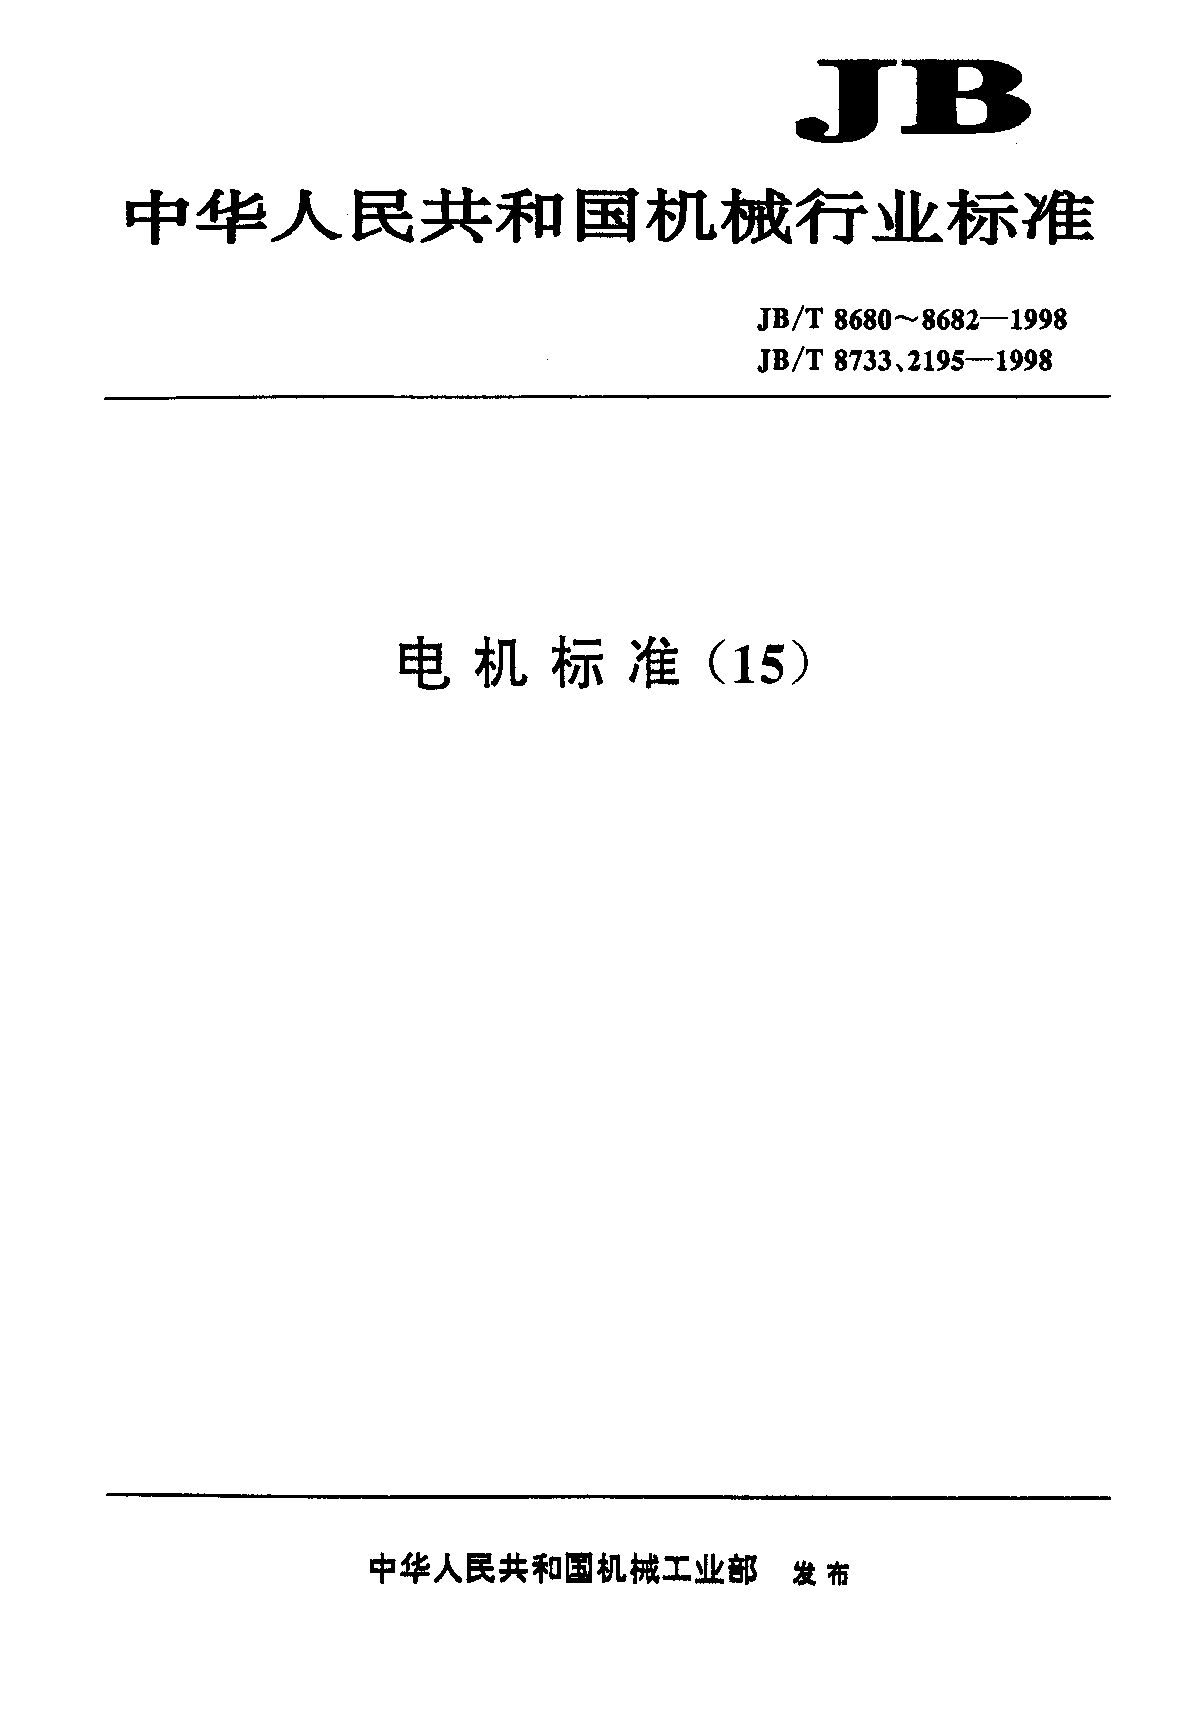 JB/T 2195-1998封面图